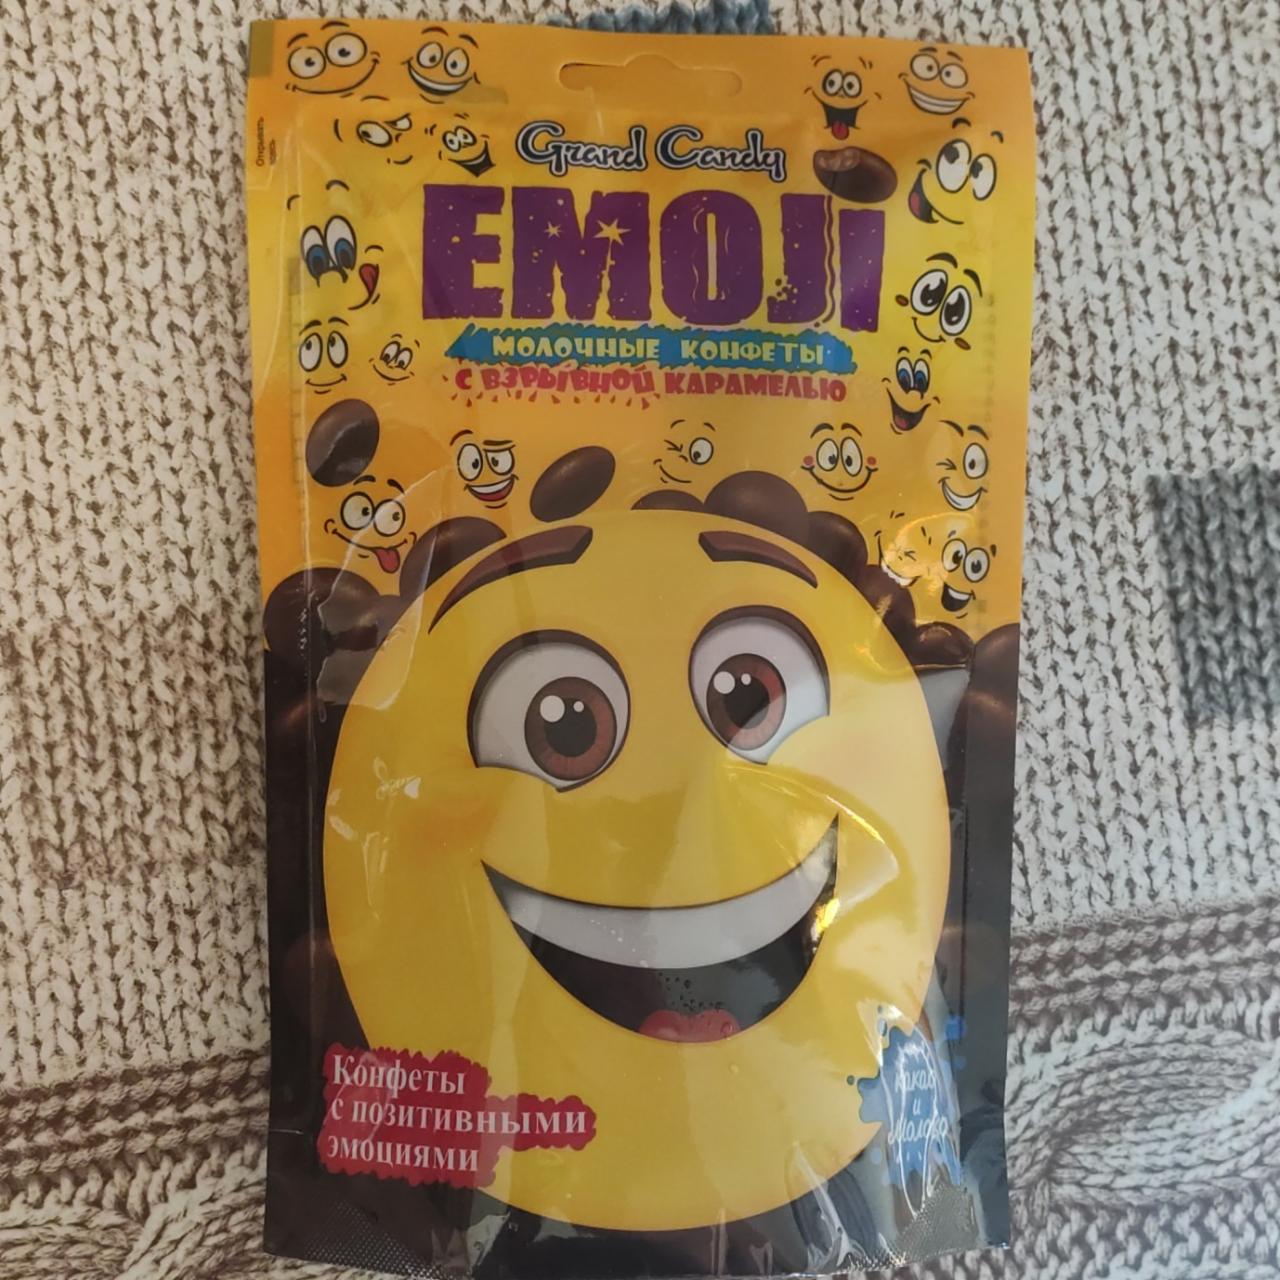 Фото - Emoji молочные конфеты с взрывной карамелью Grand candy